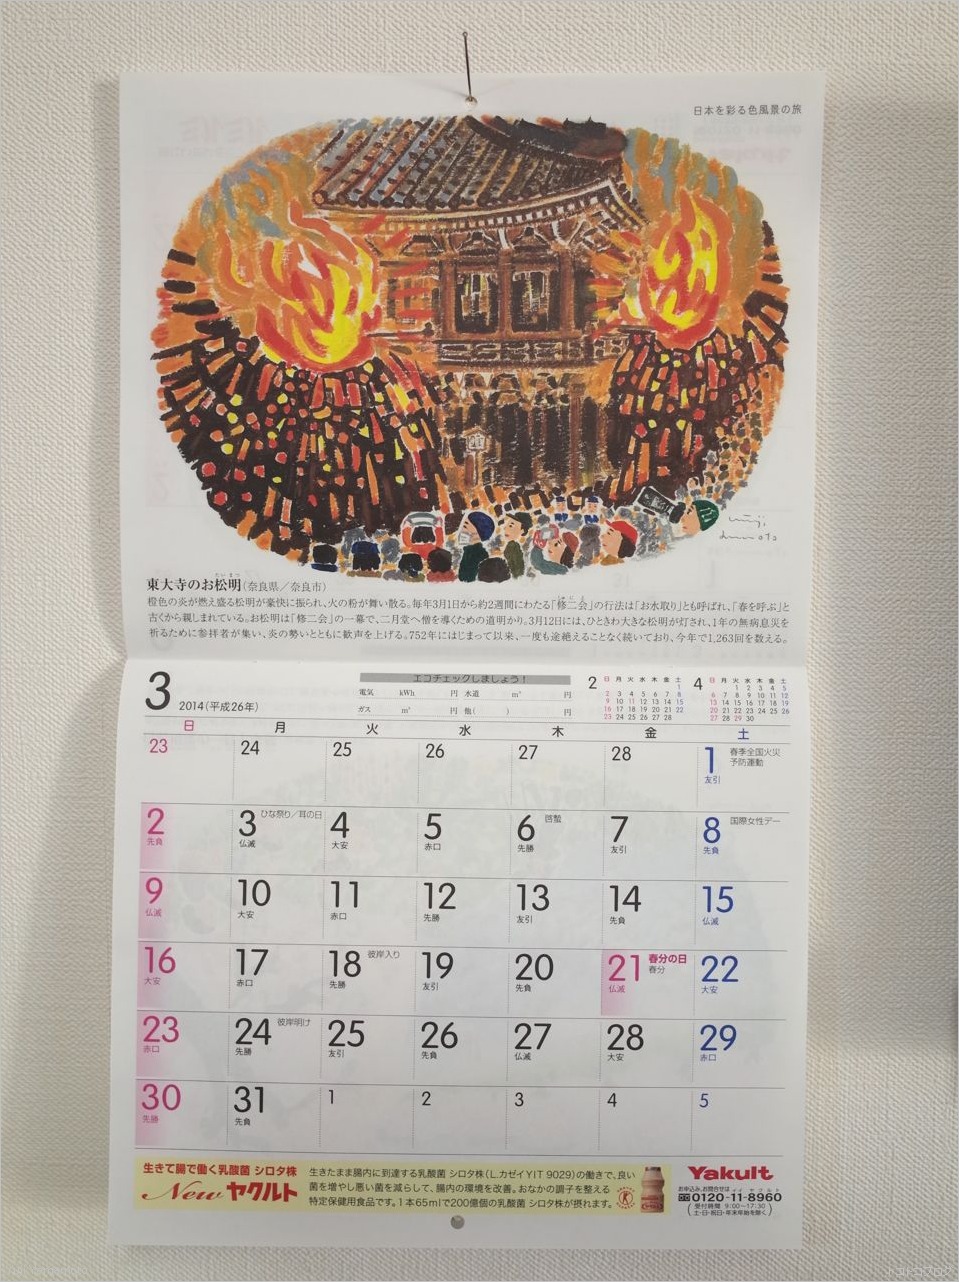 2014年3月 ヤクルトカレンダー トコトコブログ